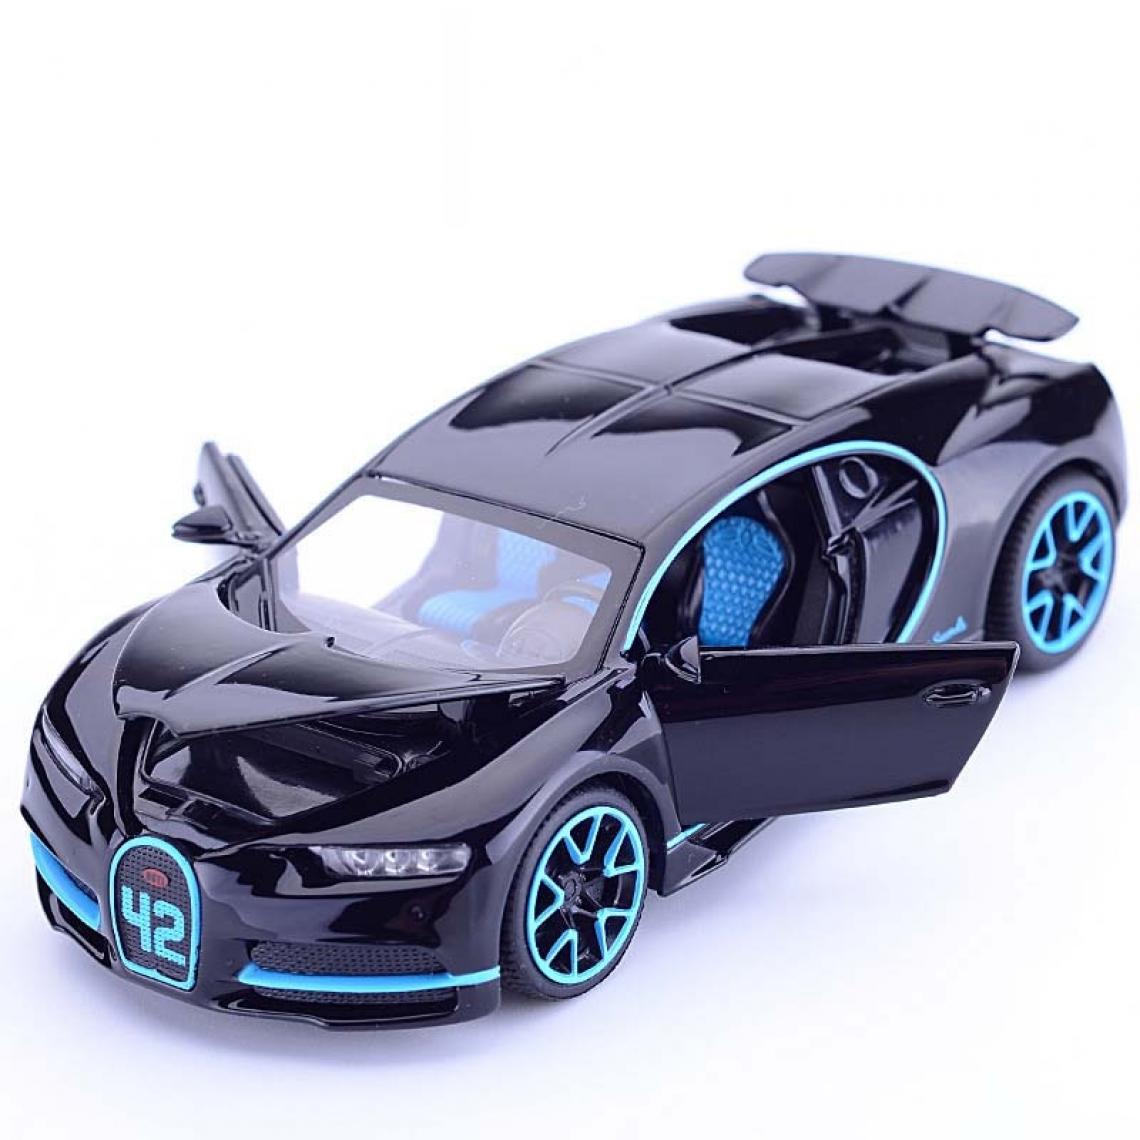 Universal - 1/32 pull back alliage sports car modèle jouet moulé sous pression simulation son et lumière super jouet de course(Le noir) - Voitures